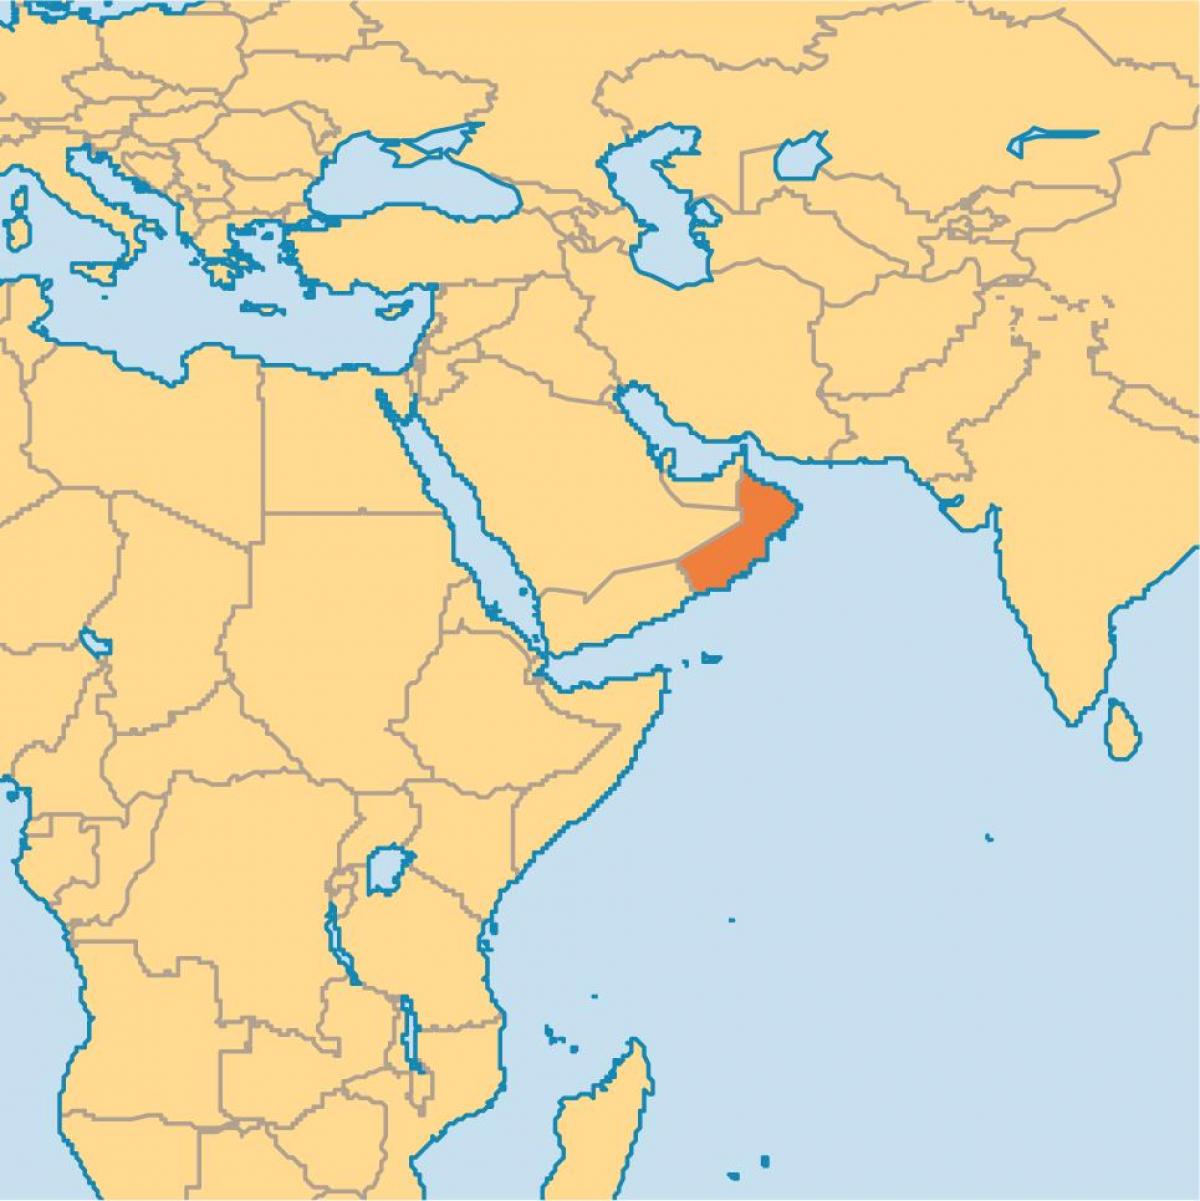 عمان کے نقشے میں دنیا کے نقشے